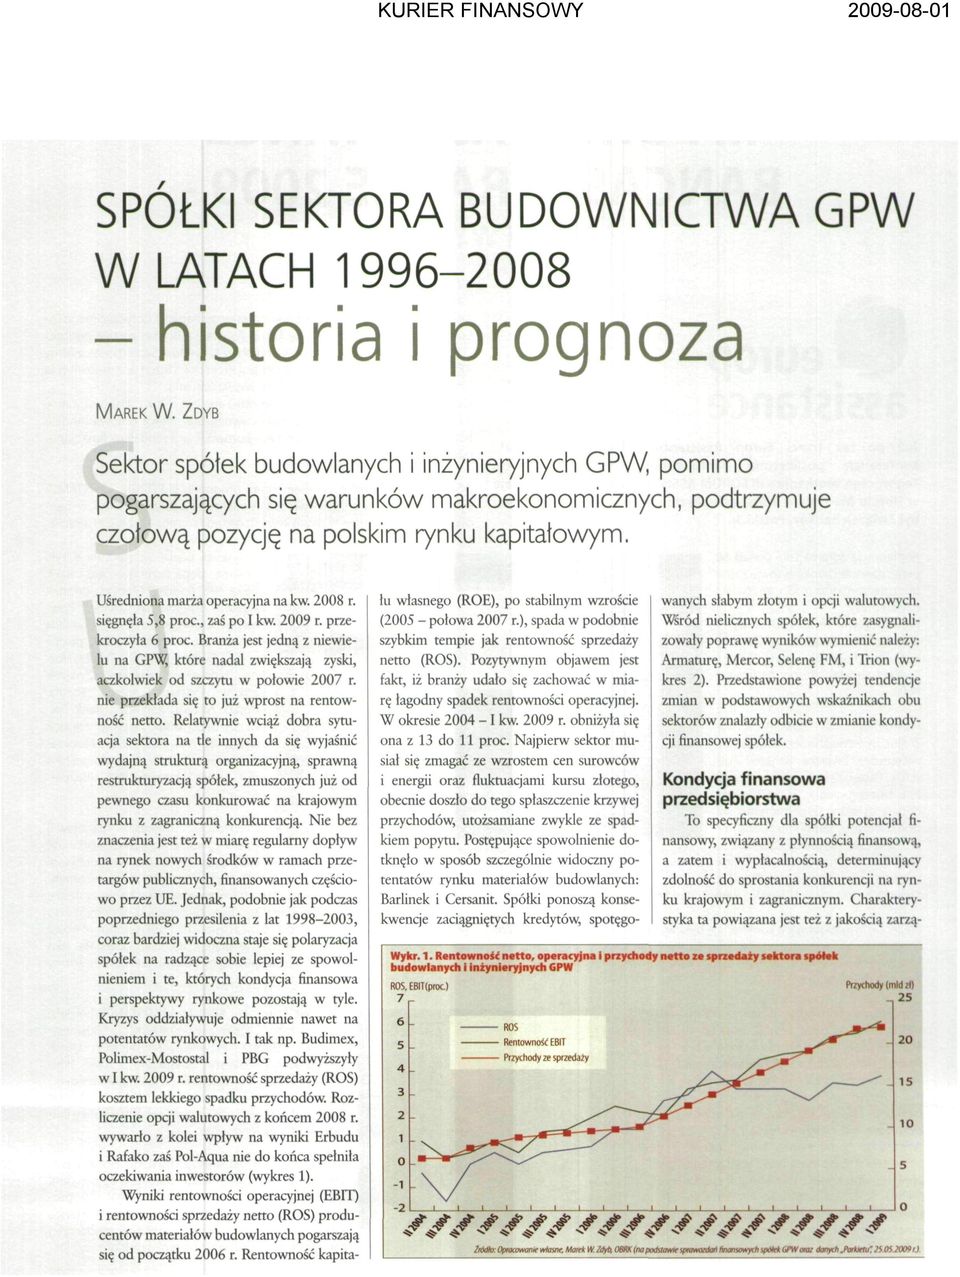 2008 r. sięgnęła 5,8 proc., zaś po I kw. 2009 r. przekroczyła 6 proc. Branża jest jedną z niewielu na GPW, które nadal zwiększają zyski, aczkolwiek od szczytu w połowie 2007 r.